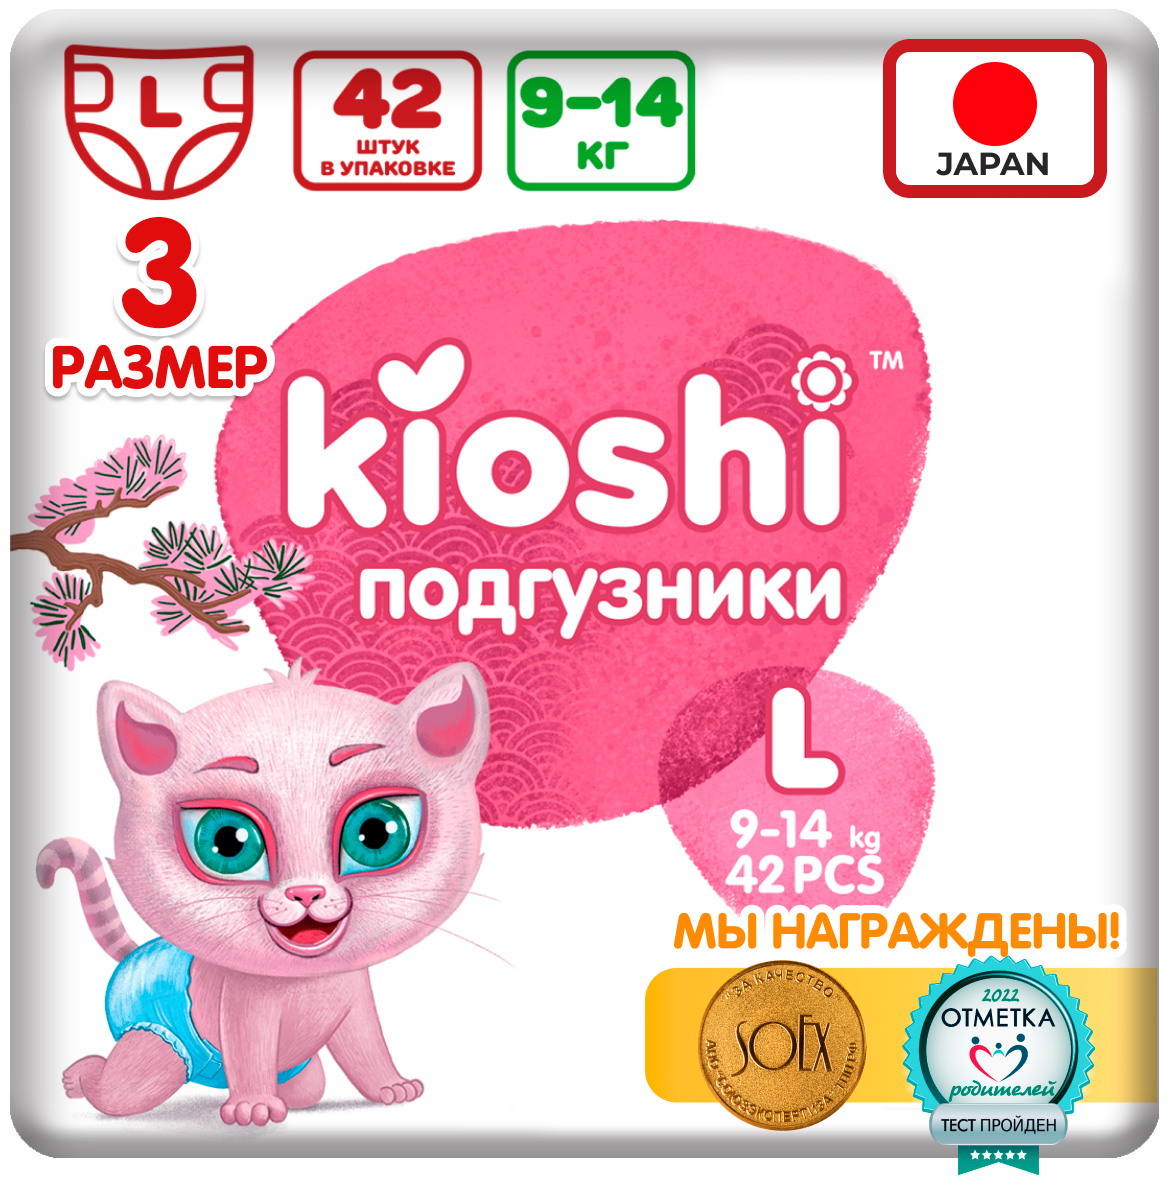 цена Подгузники Kioshi L (9-14 кг), KS013